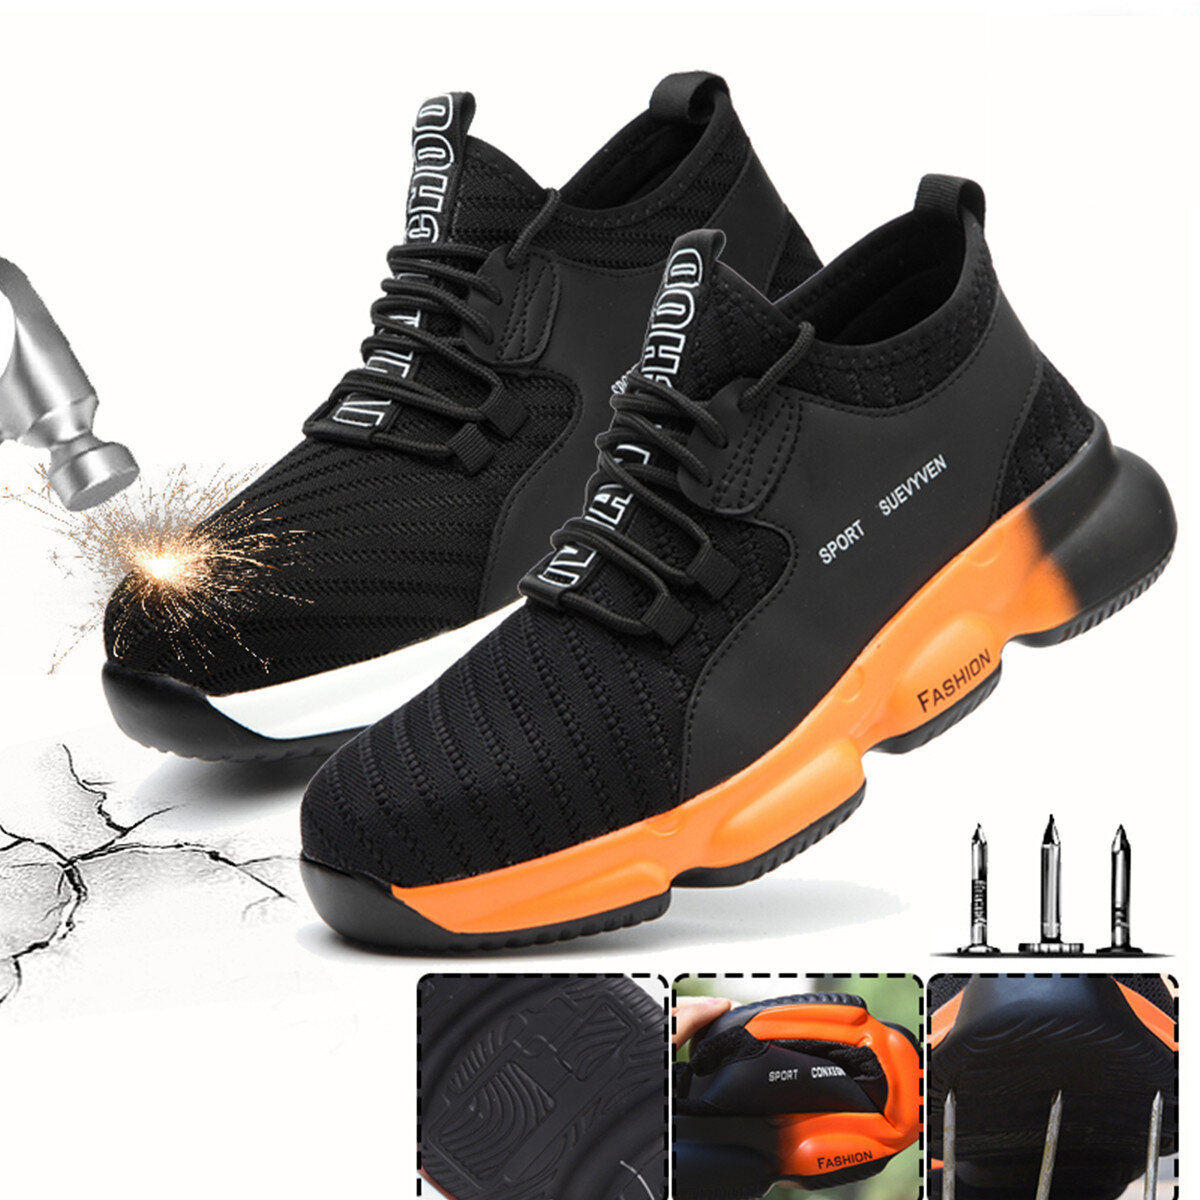 Sapatos de trabalho de segurança unissex com biqueira de aço tecido voador para corrida, camping, escalada e caminhada.